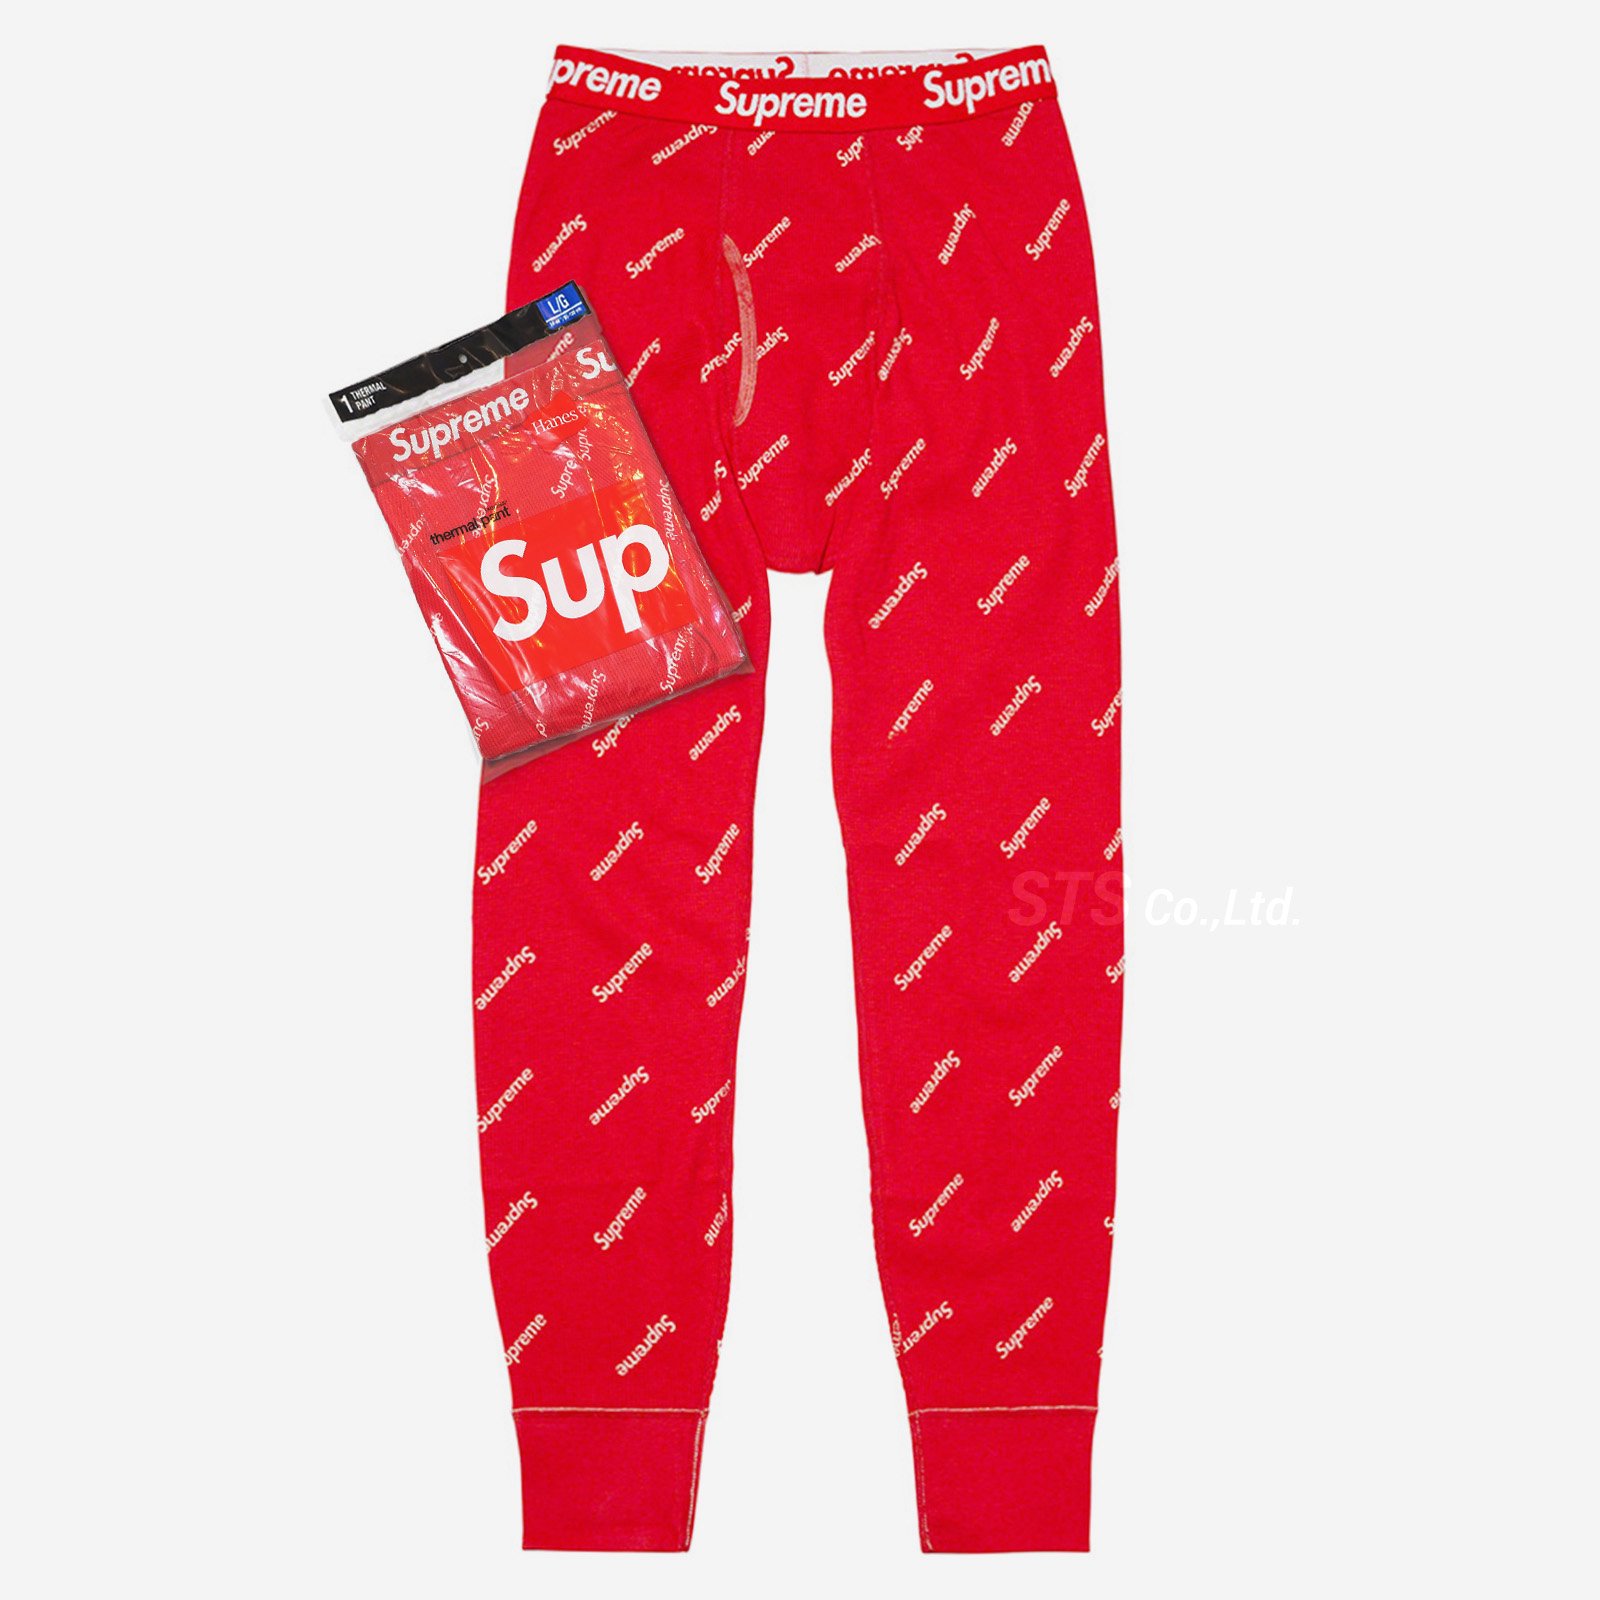 supreme thermal pant